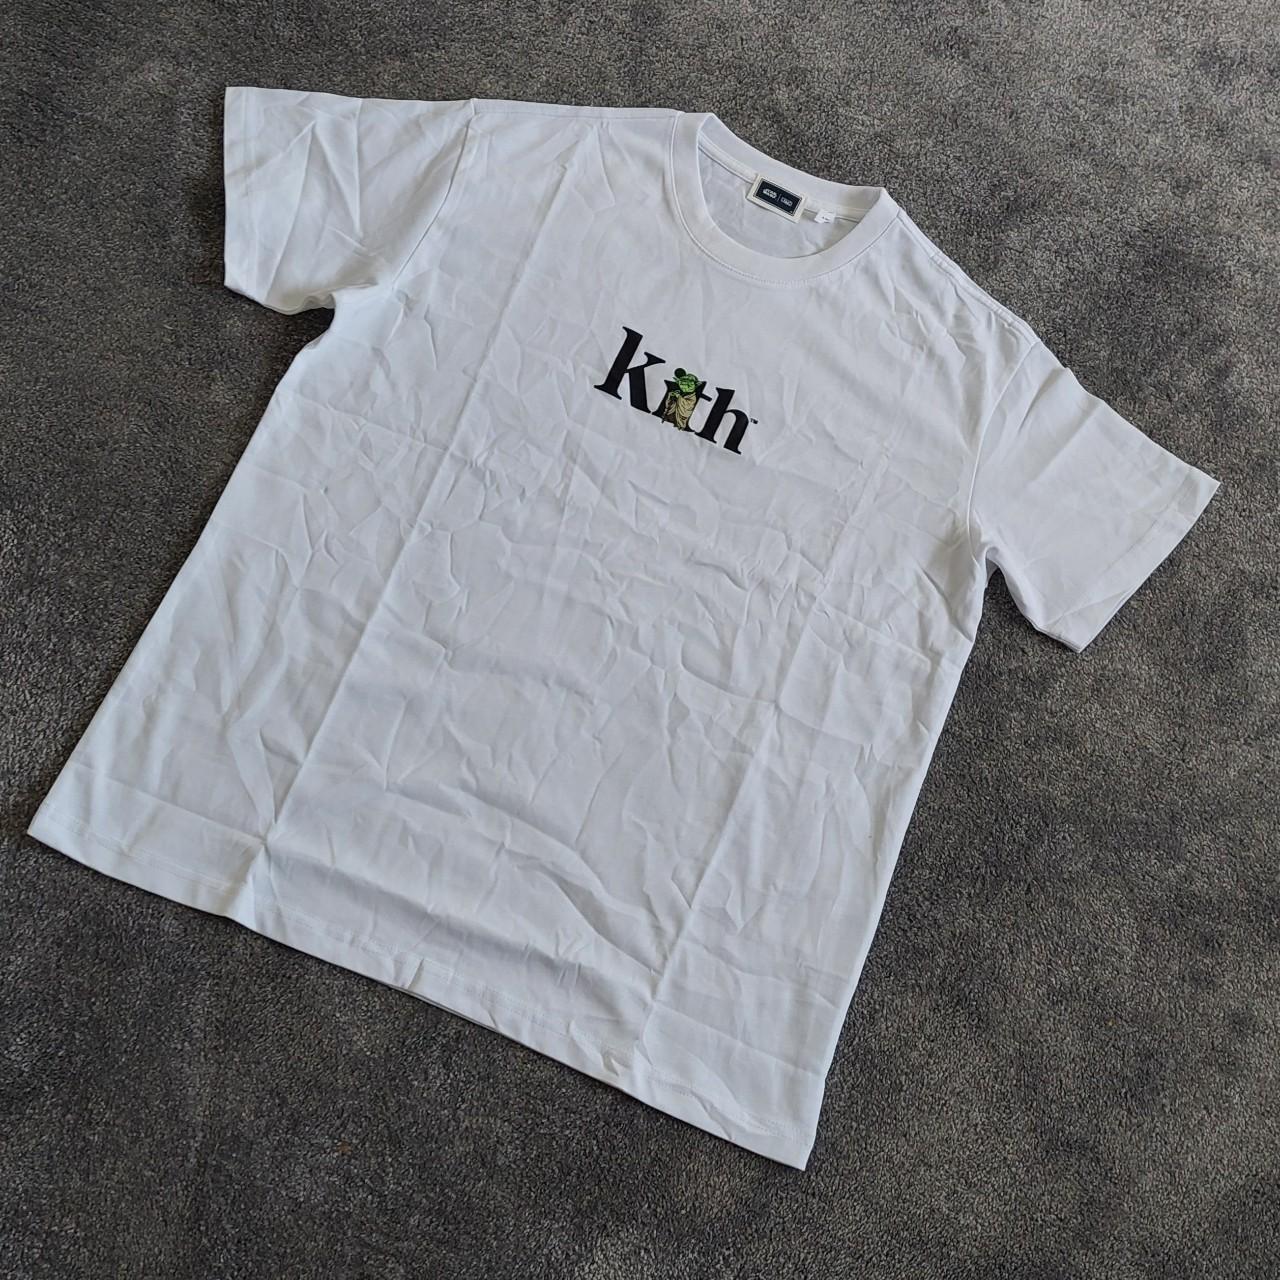 Kith Men's White T-shirt | Depop